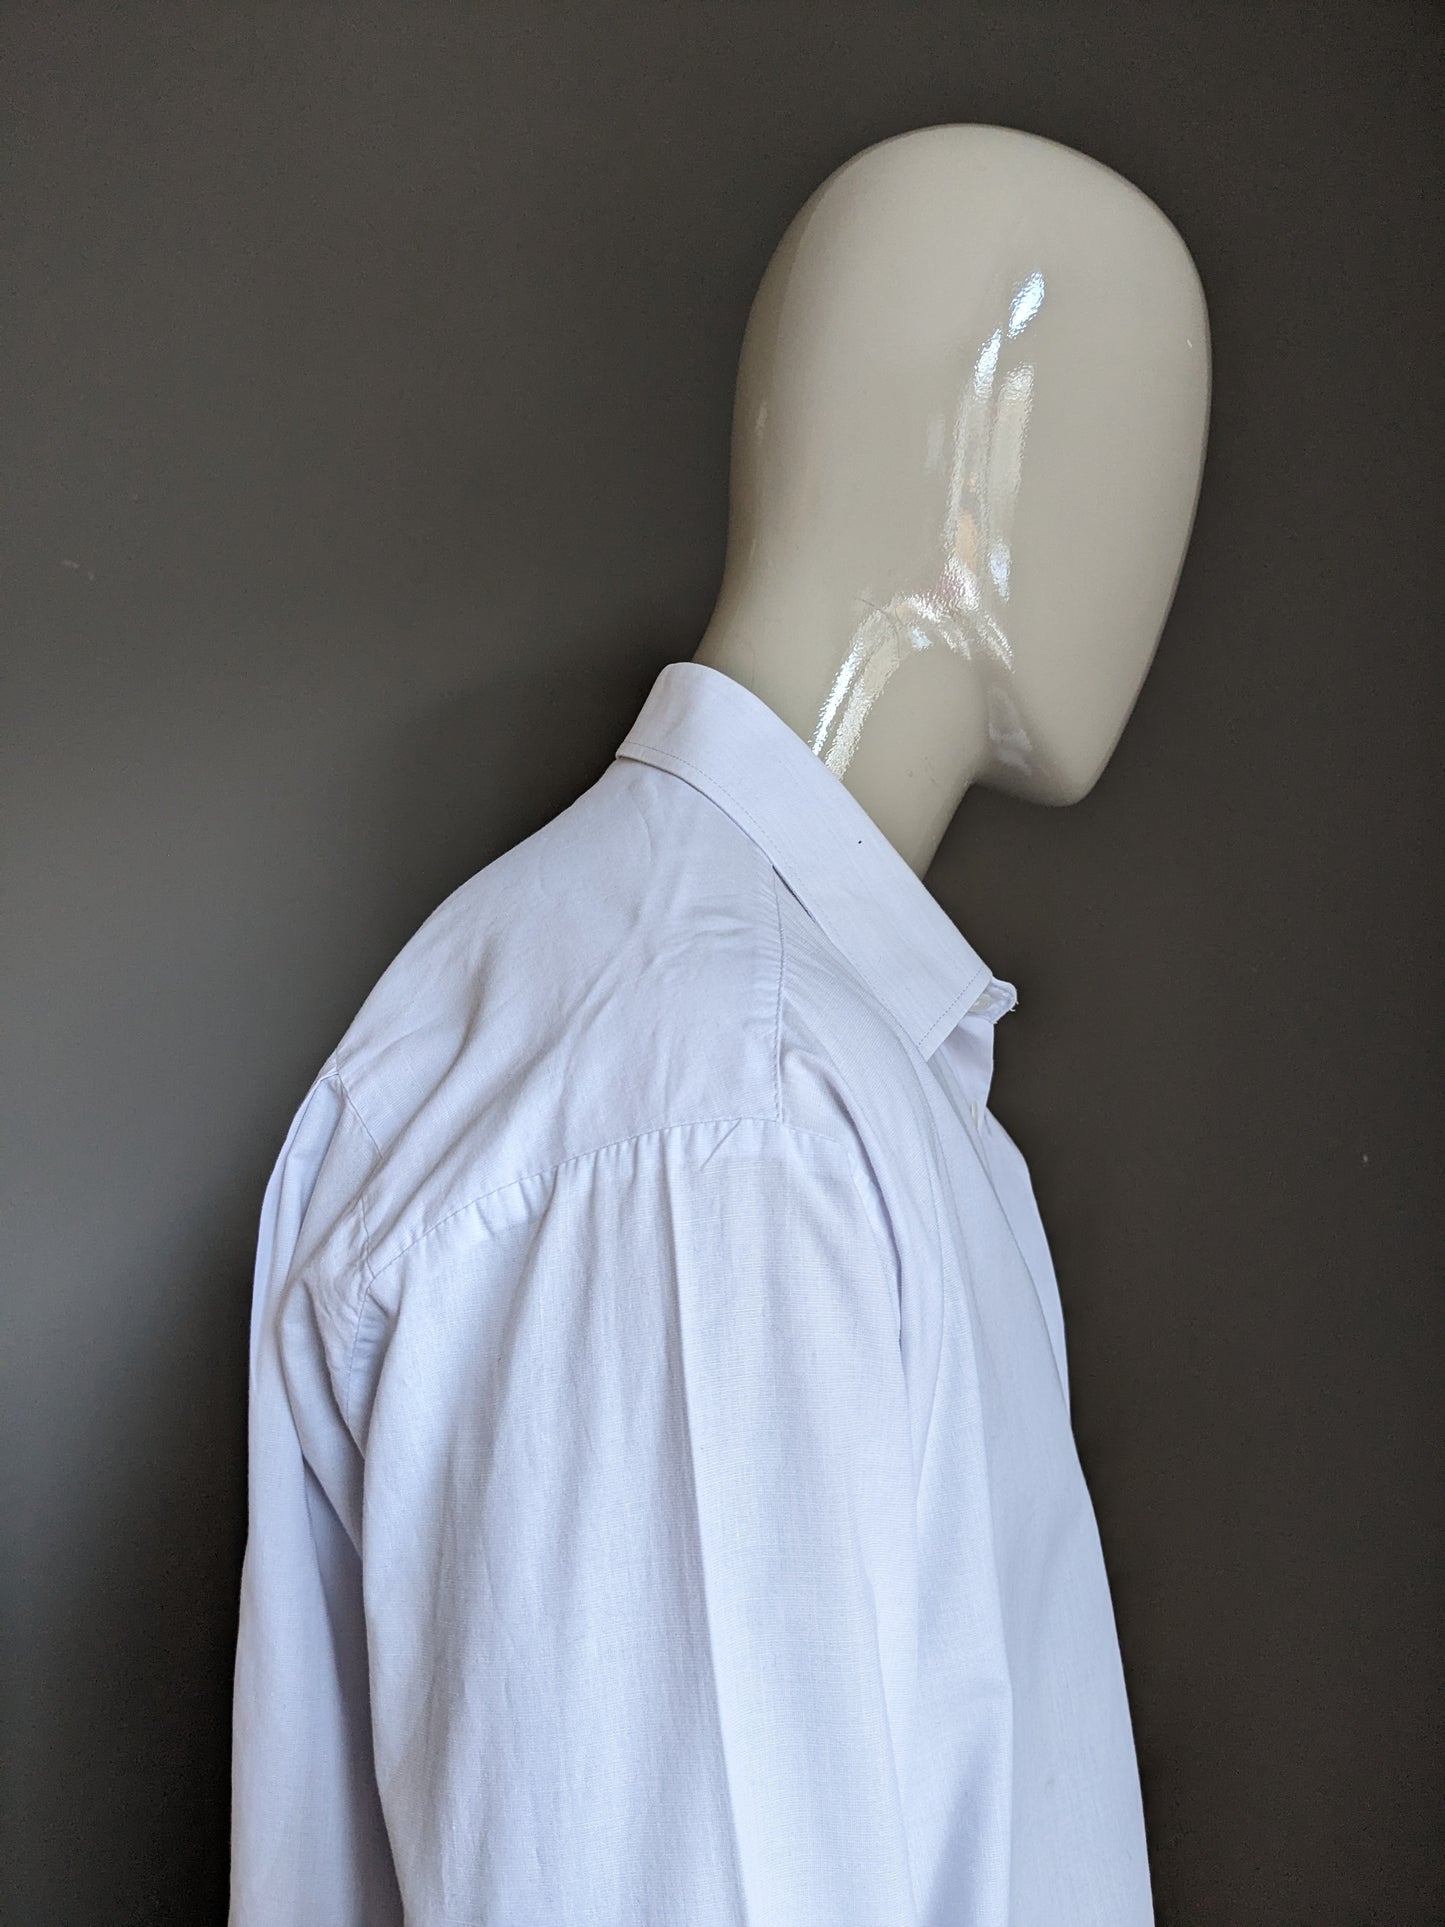 Camisa del diseñador vintage. Blanco. Tamaño 2xl / xxl.